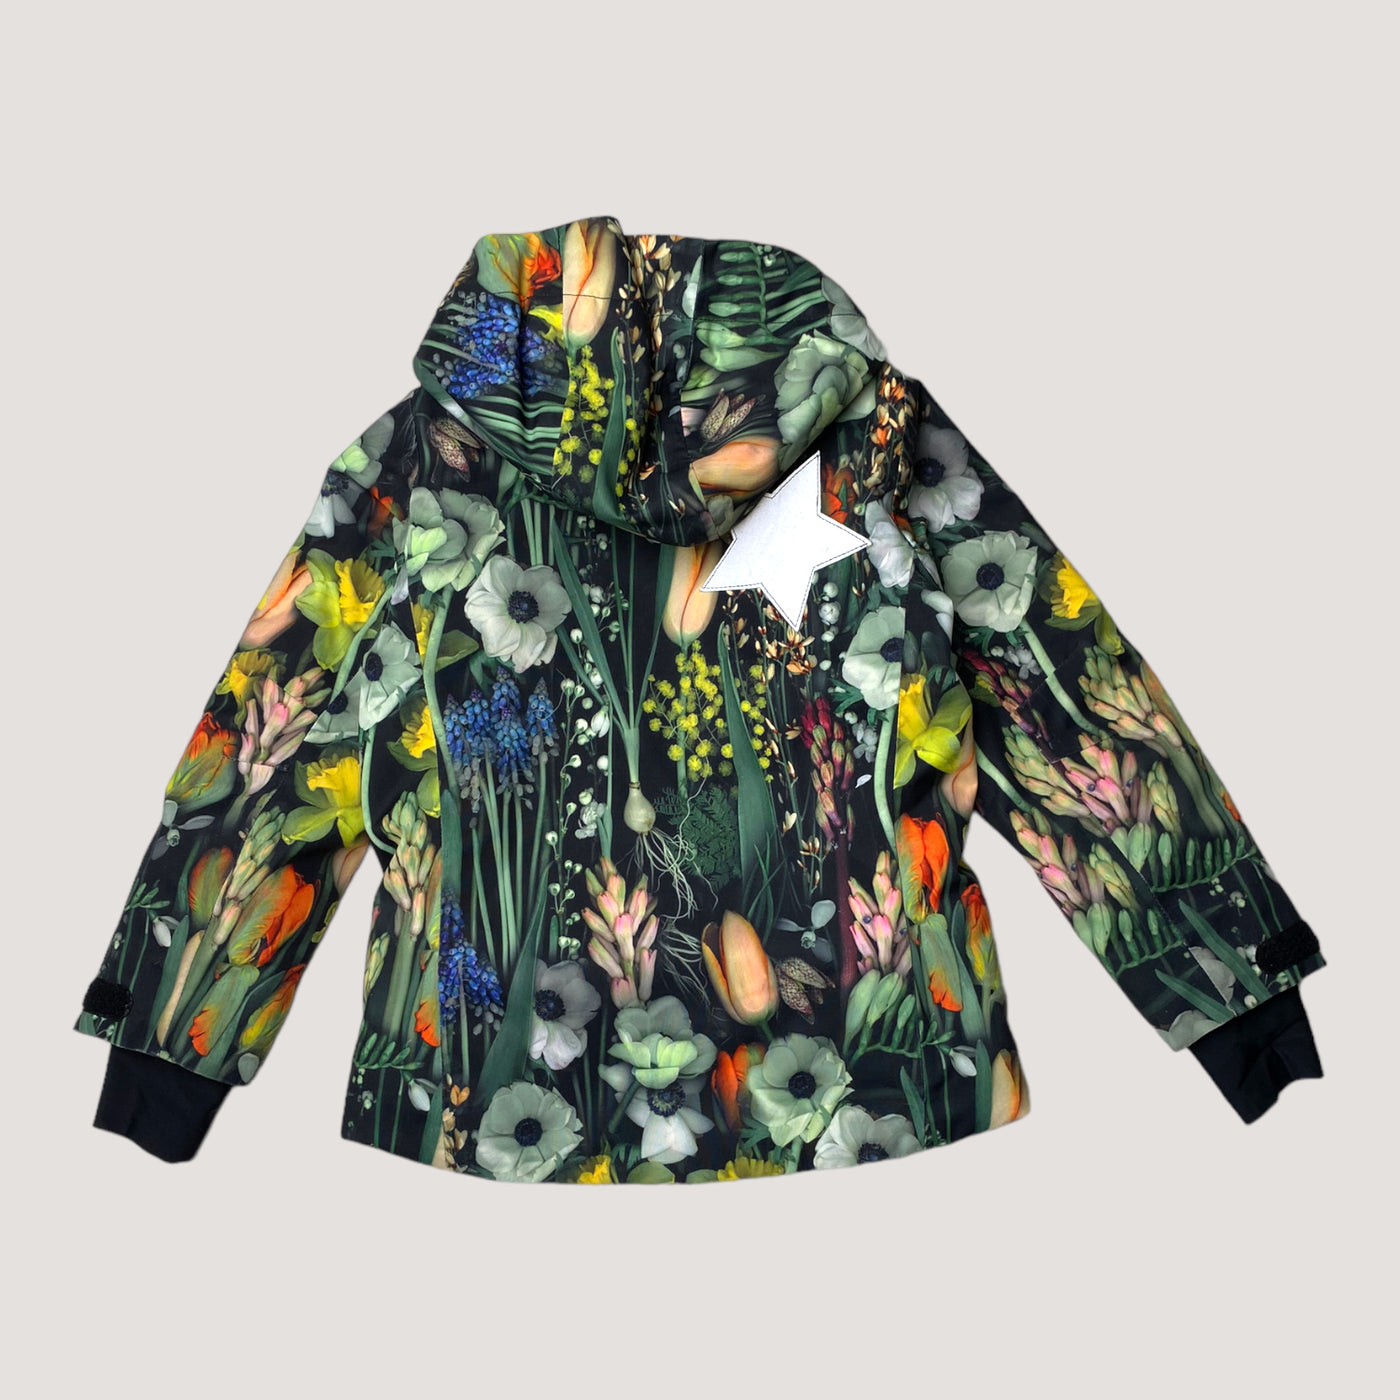 Molo pearson winter jacket, flowers | 110cm